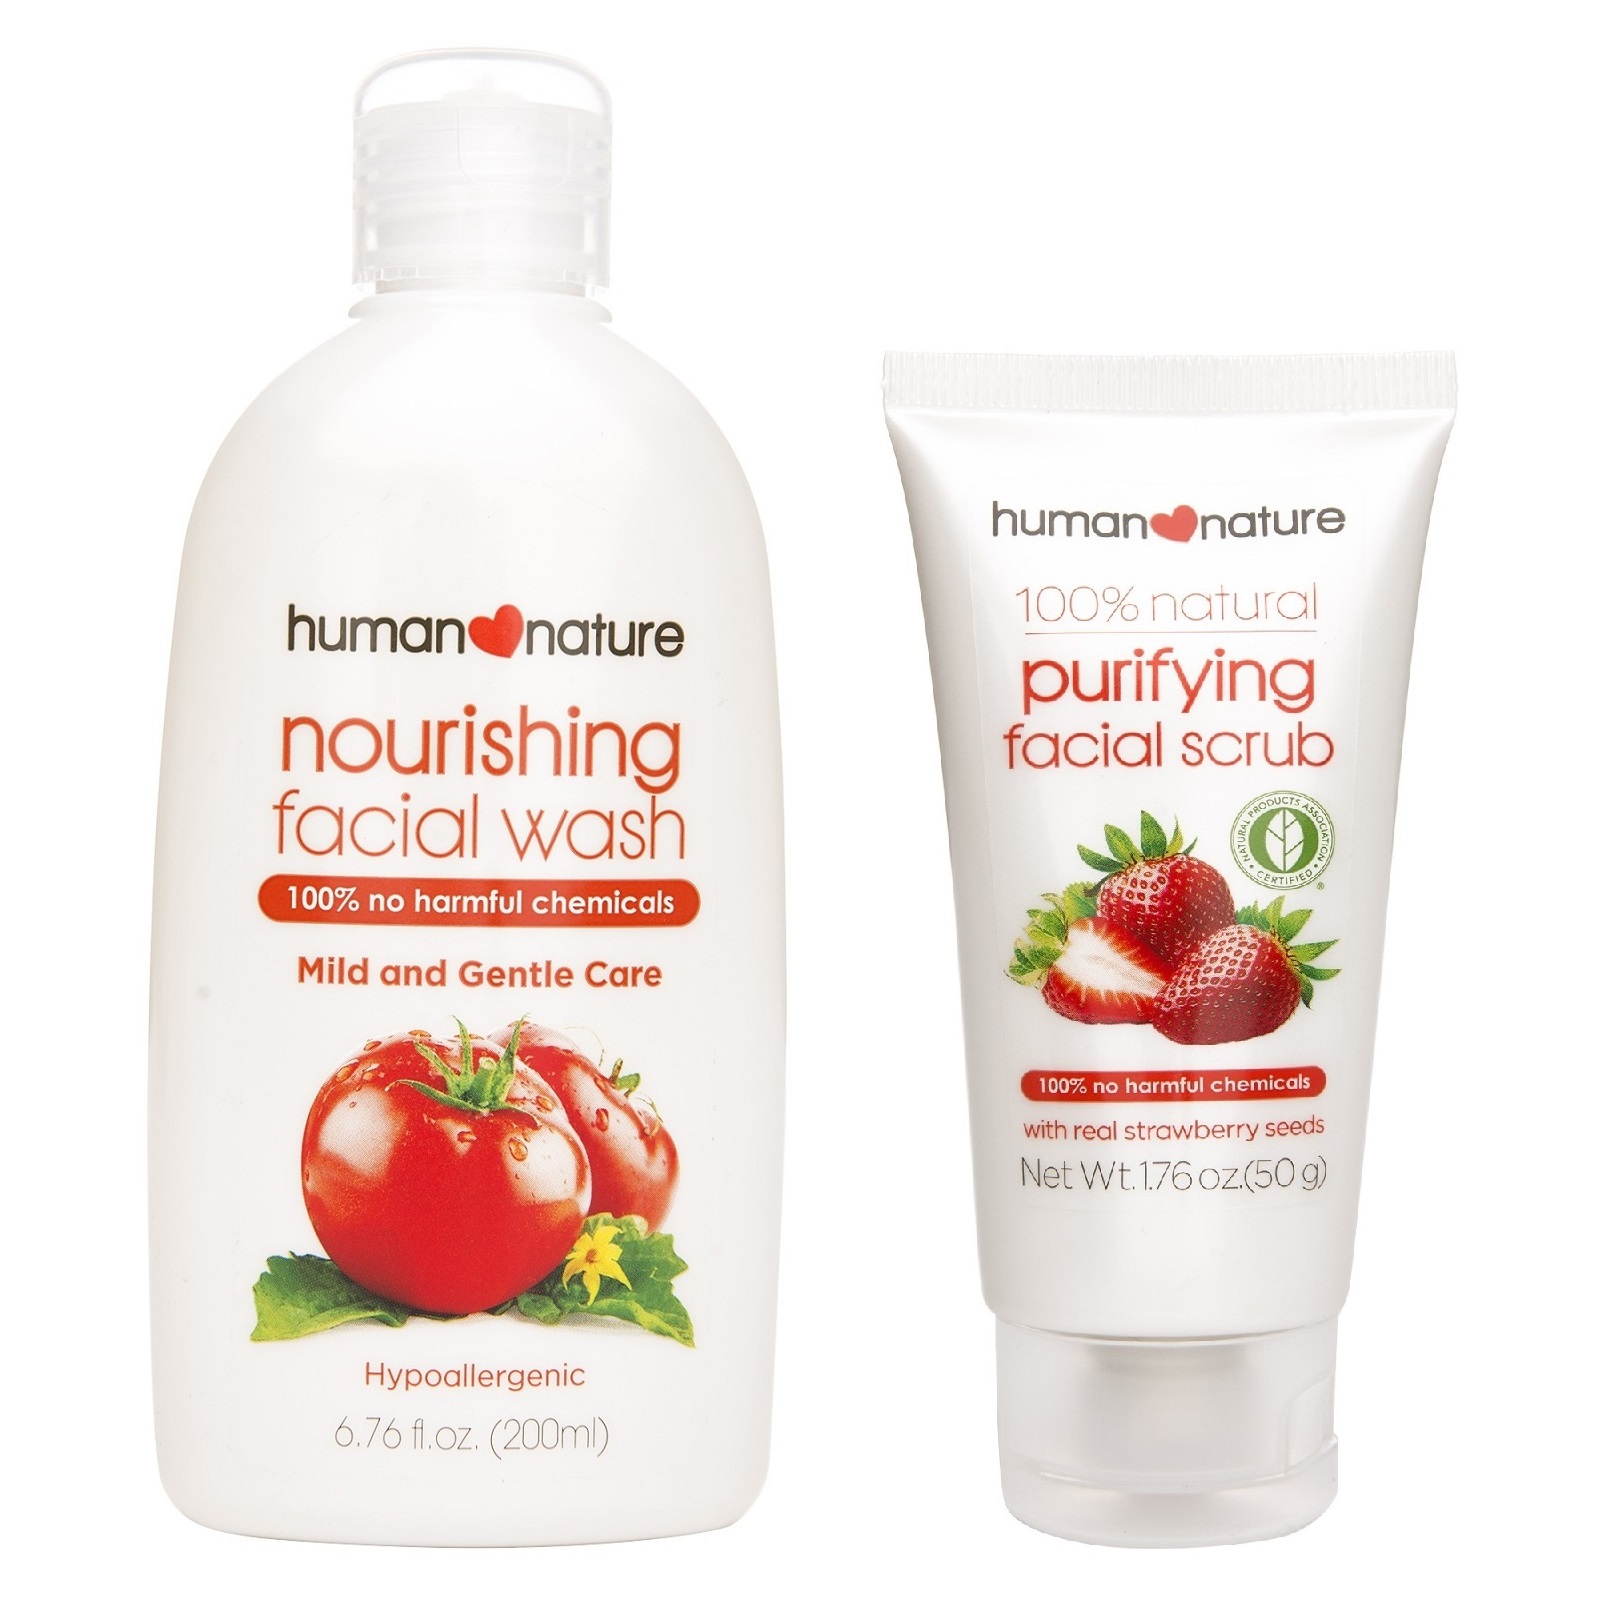 Human Nature Nourishing Facial Wash and Purifying Scrub